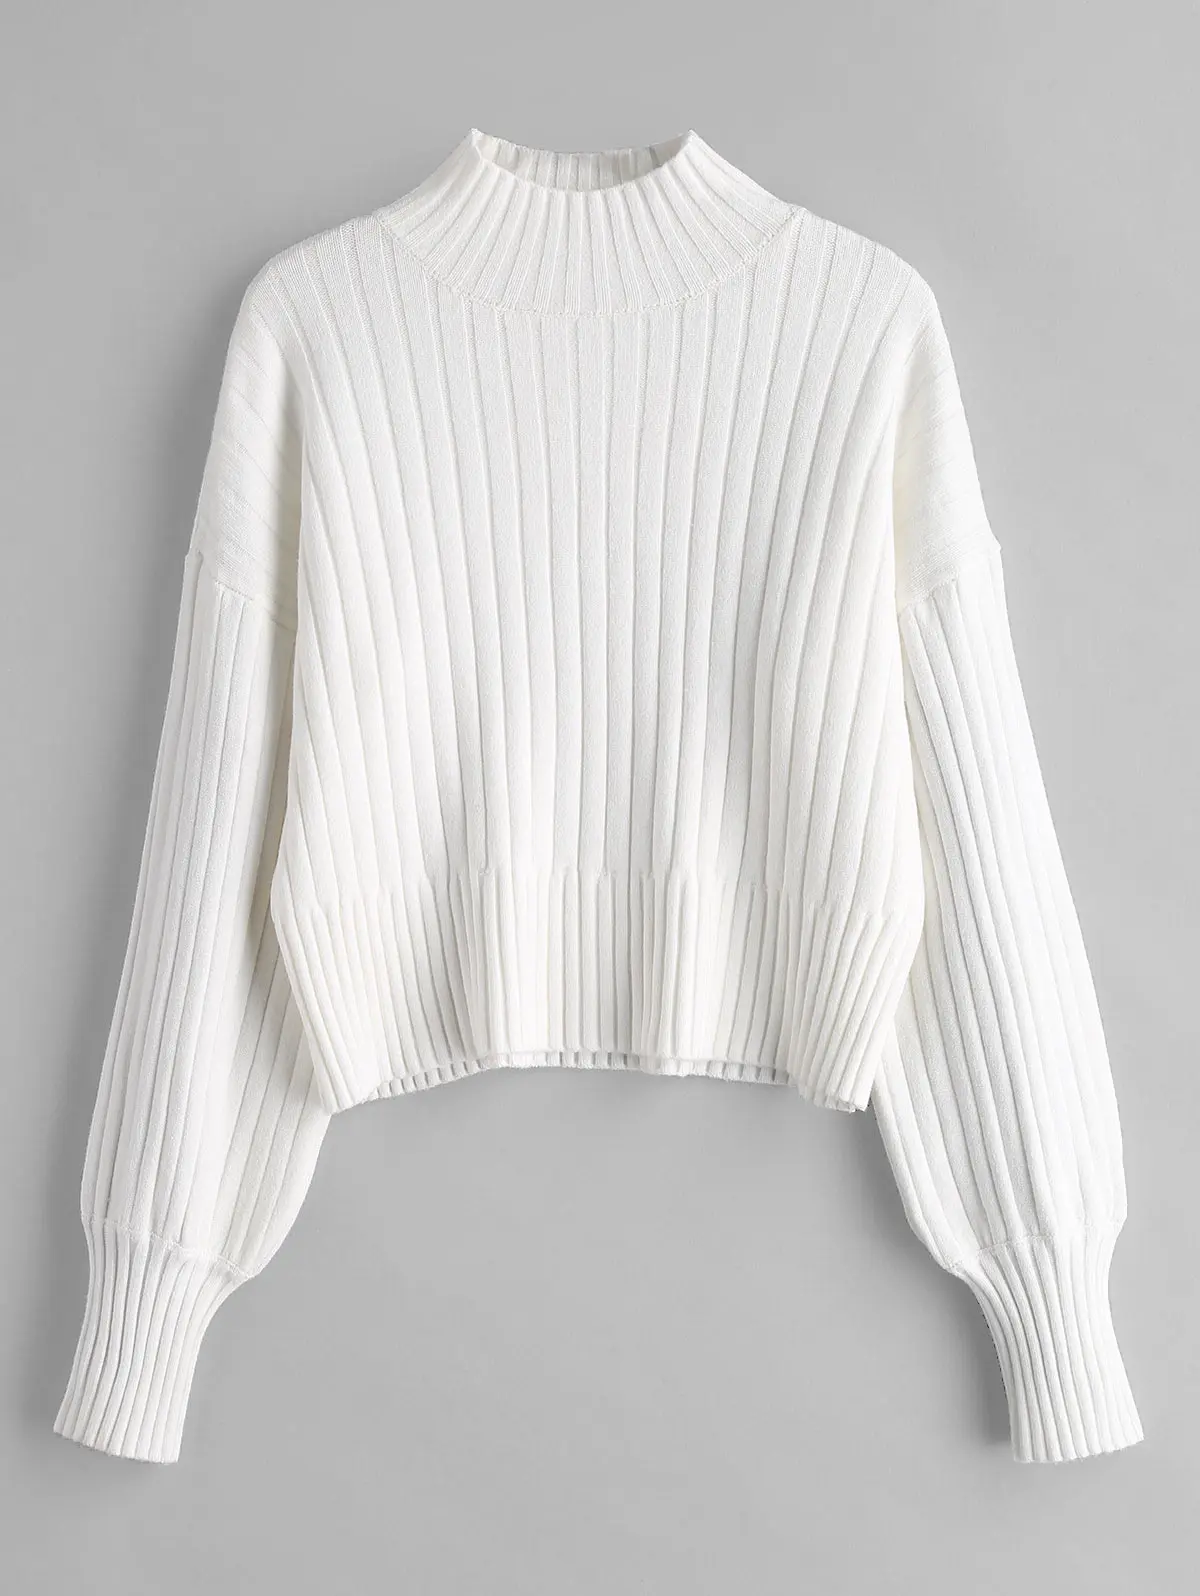 Zabul теплый хлопковый свитер водолазка с открытыми плечами однотонные свободные топы вязаный женский свитер джемперы пуловеры с длинными рукавами Осень